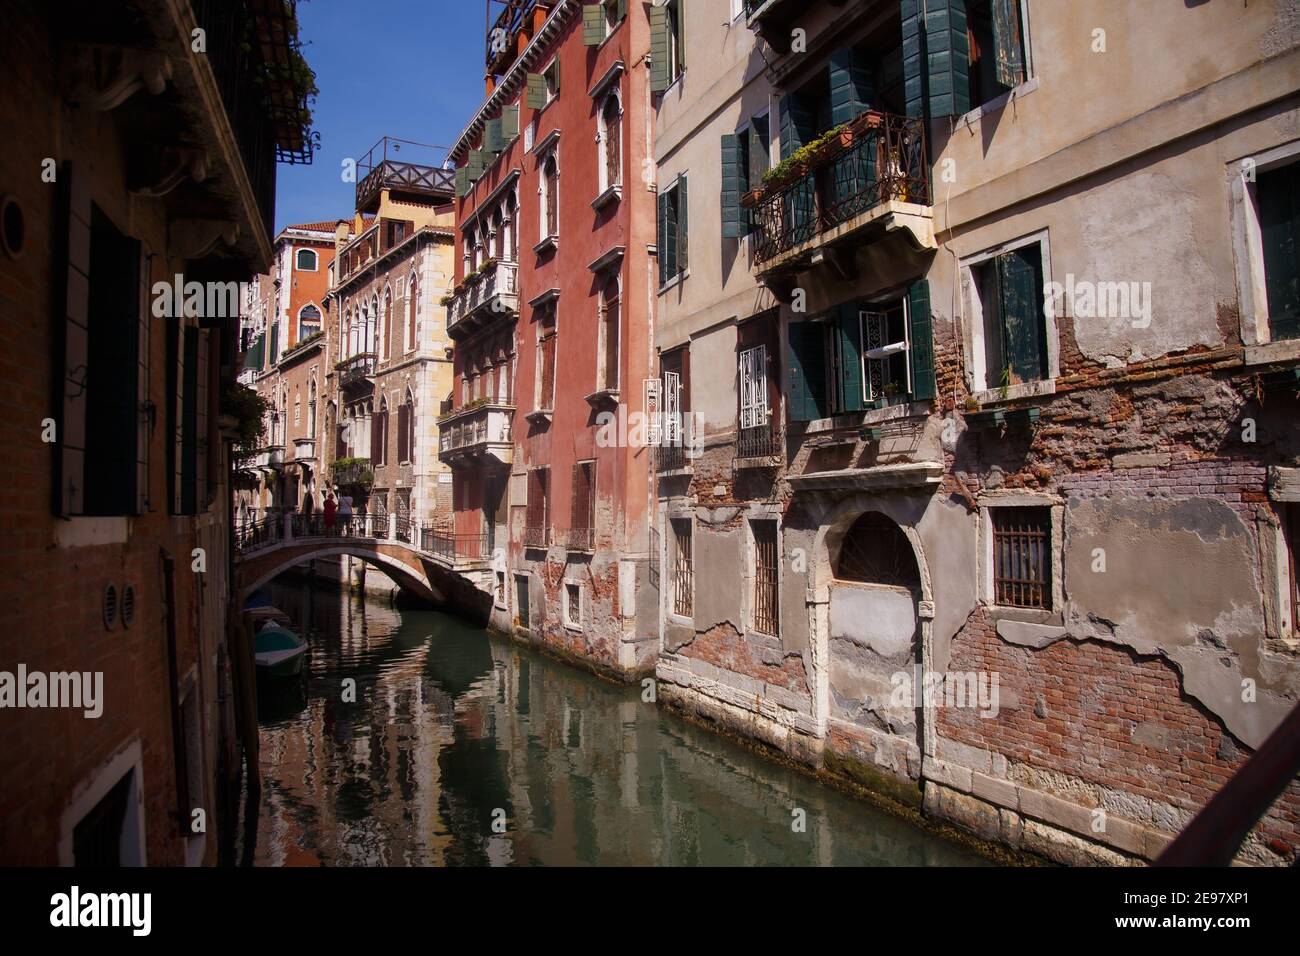 Venise, Italie - septembre 2020 : canaux confortables de Venise, ville sur l'eau Banque D'Images